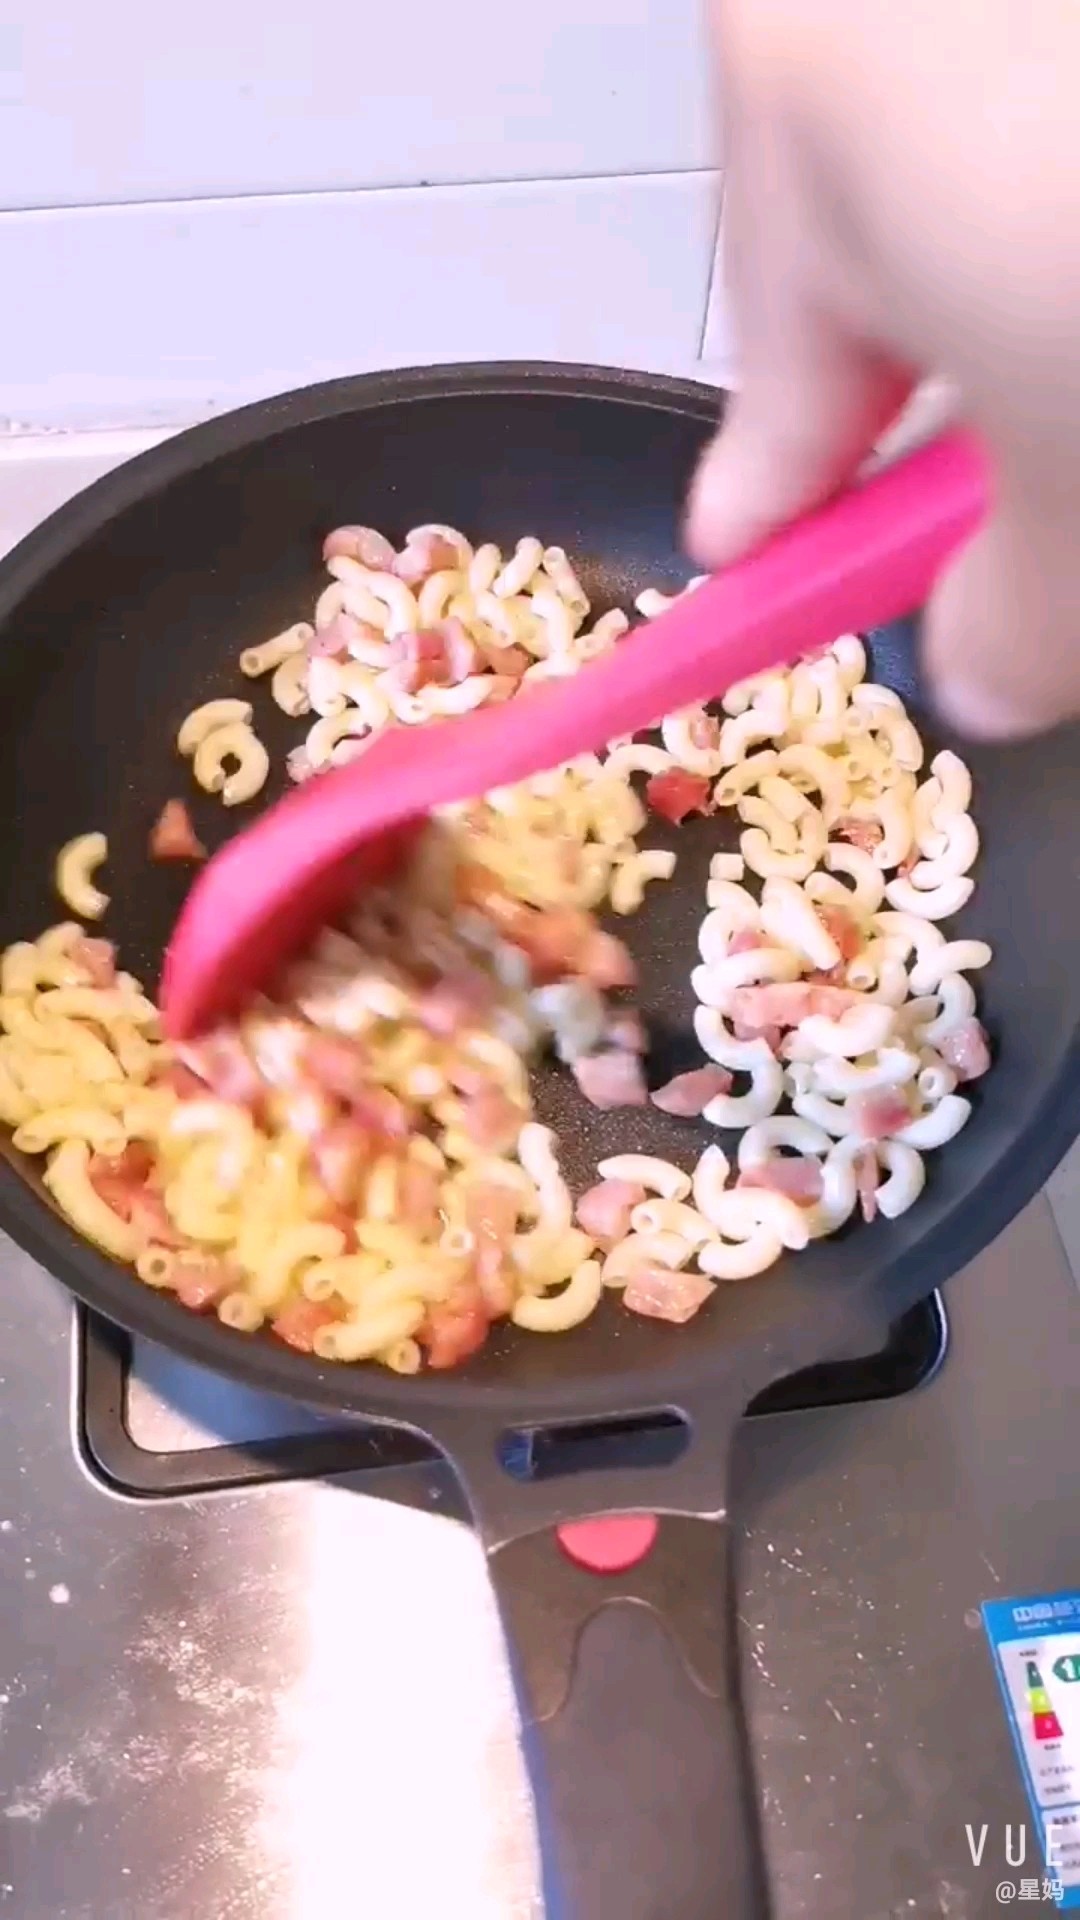 Stir-fried Macaroni with Sausage recipe